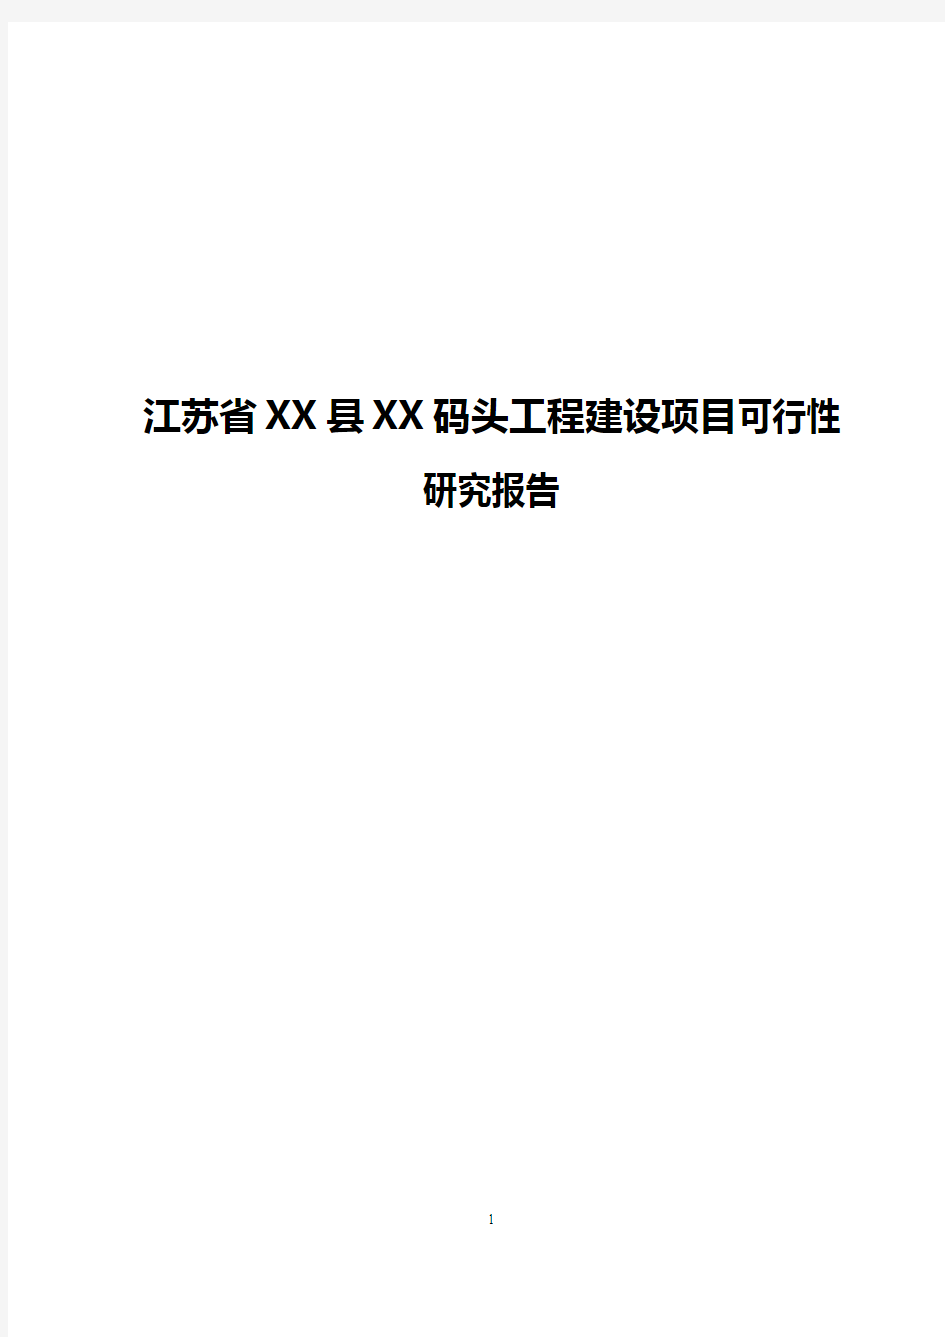 【精选审批稿】江苏省XX县XX码头工程建设项目可行性研究报告